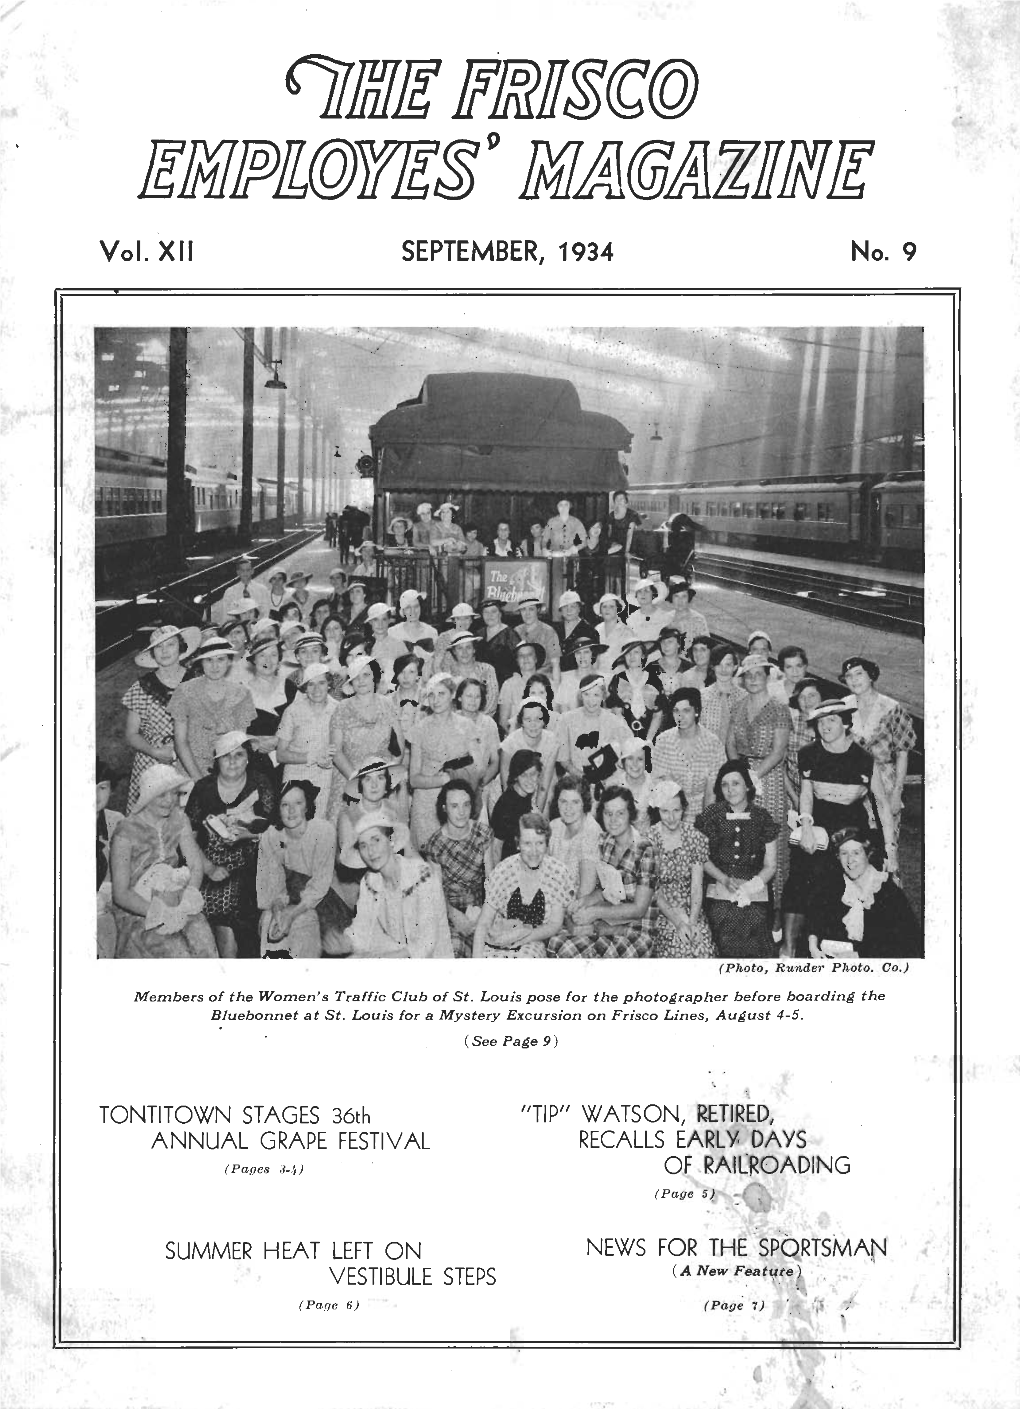 The Frisco Employes' Magazine, September 1934